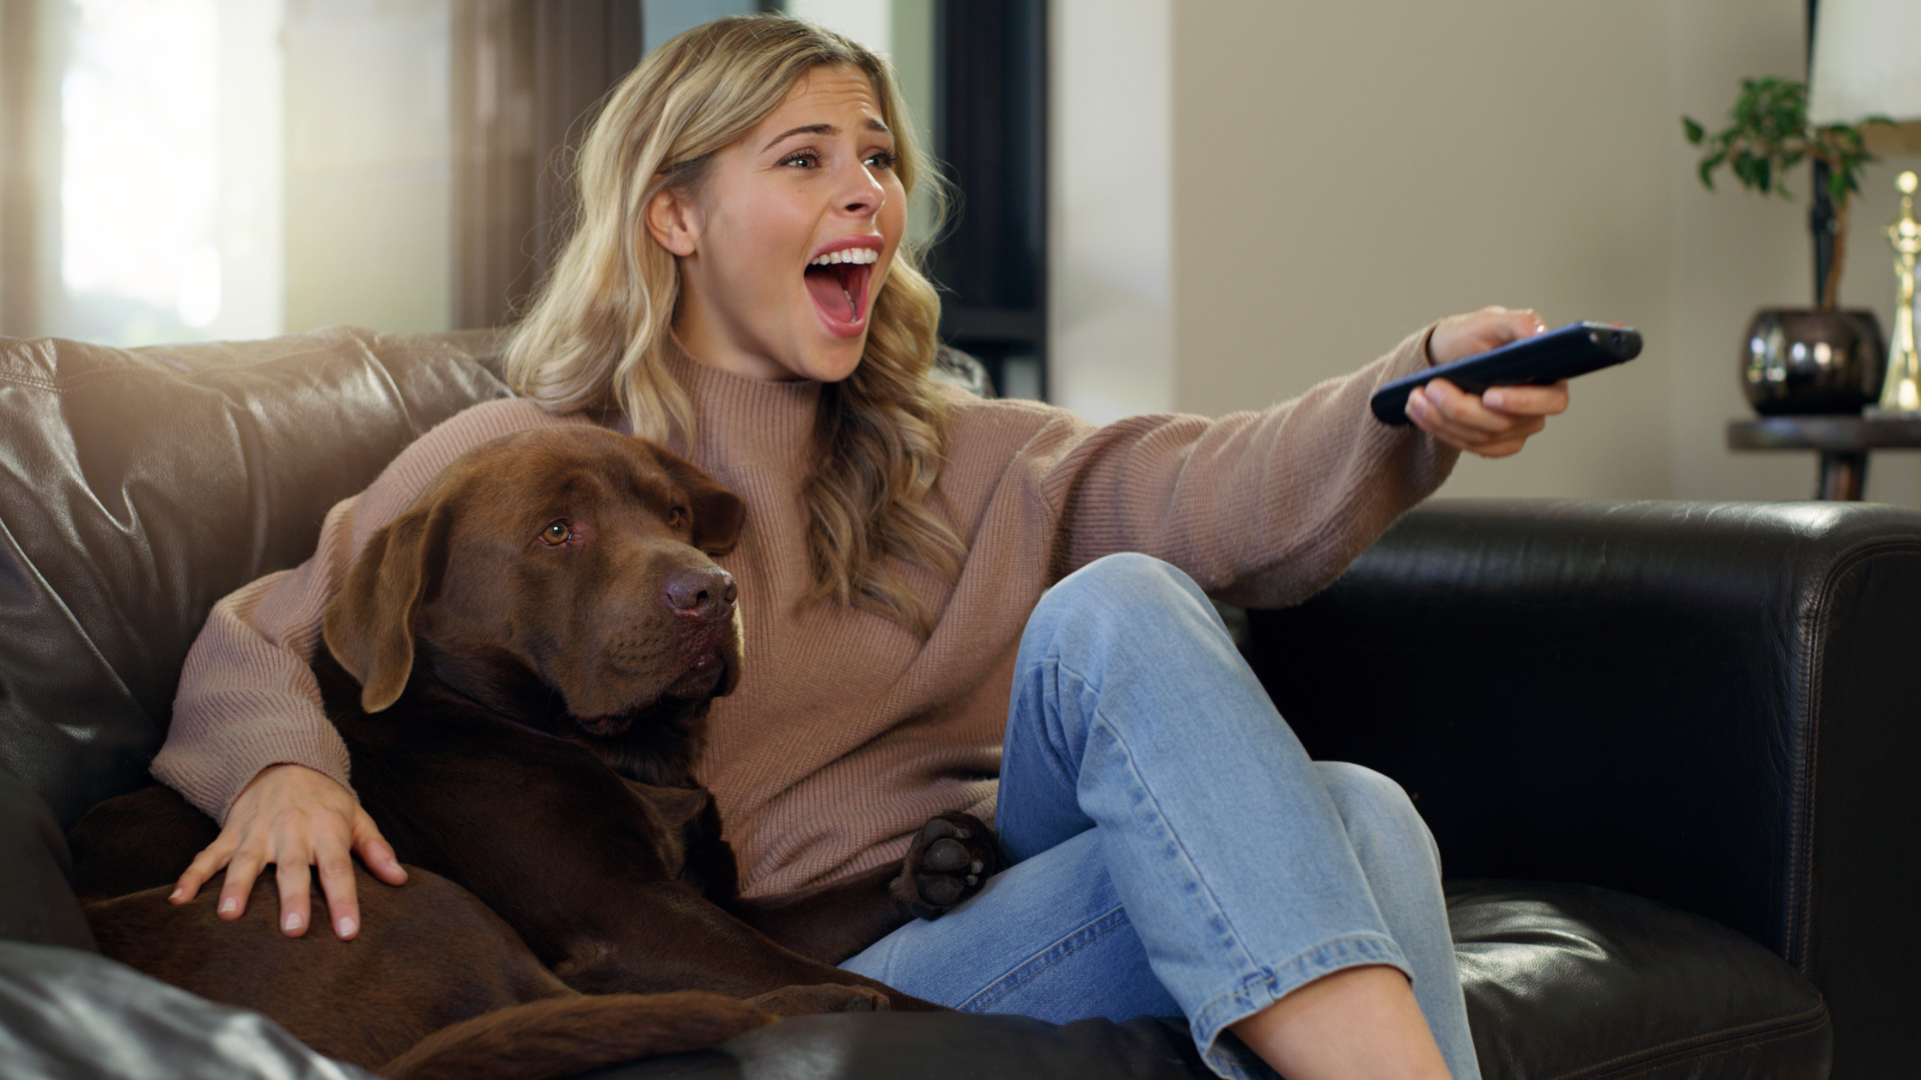 Nesta imagem podemos ver uma moça assistindo TV ao lado de seu cachorro. Ela parece bem animada, enquanto acompanha uma publicidade na TV aberta.